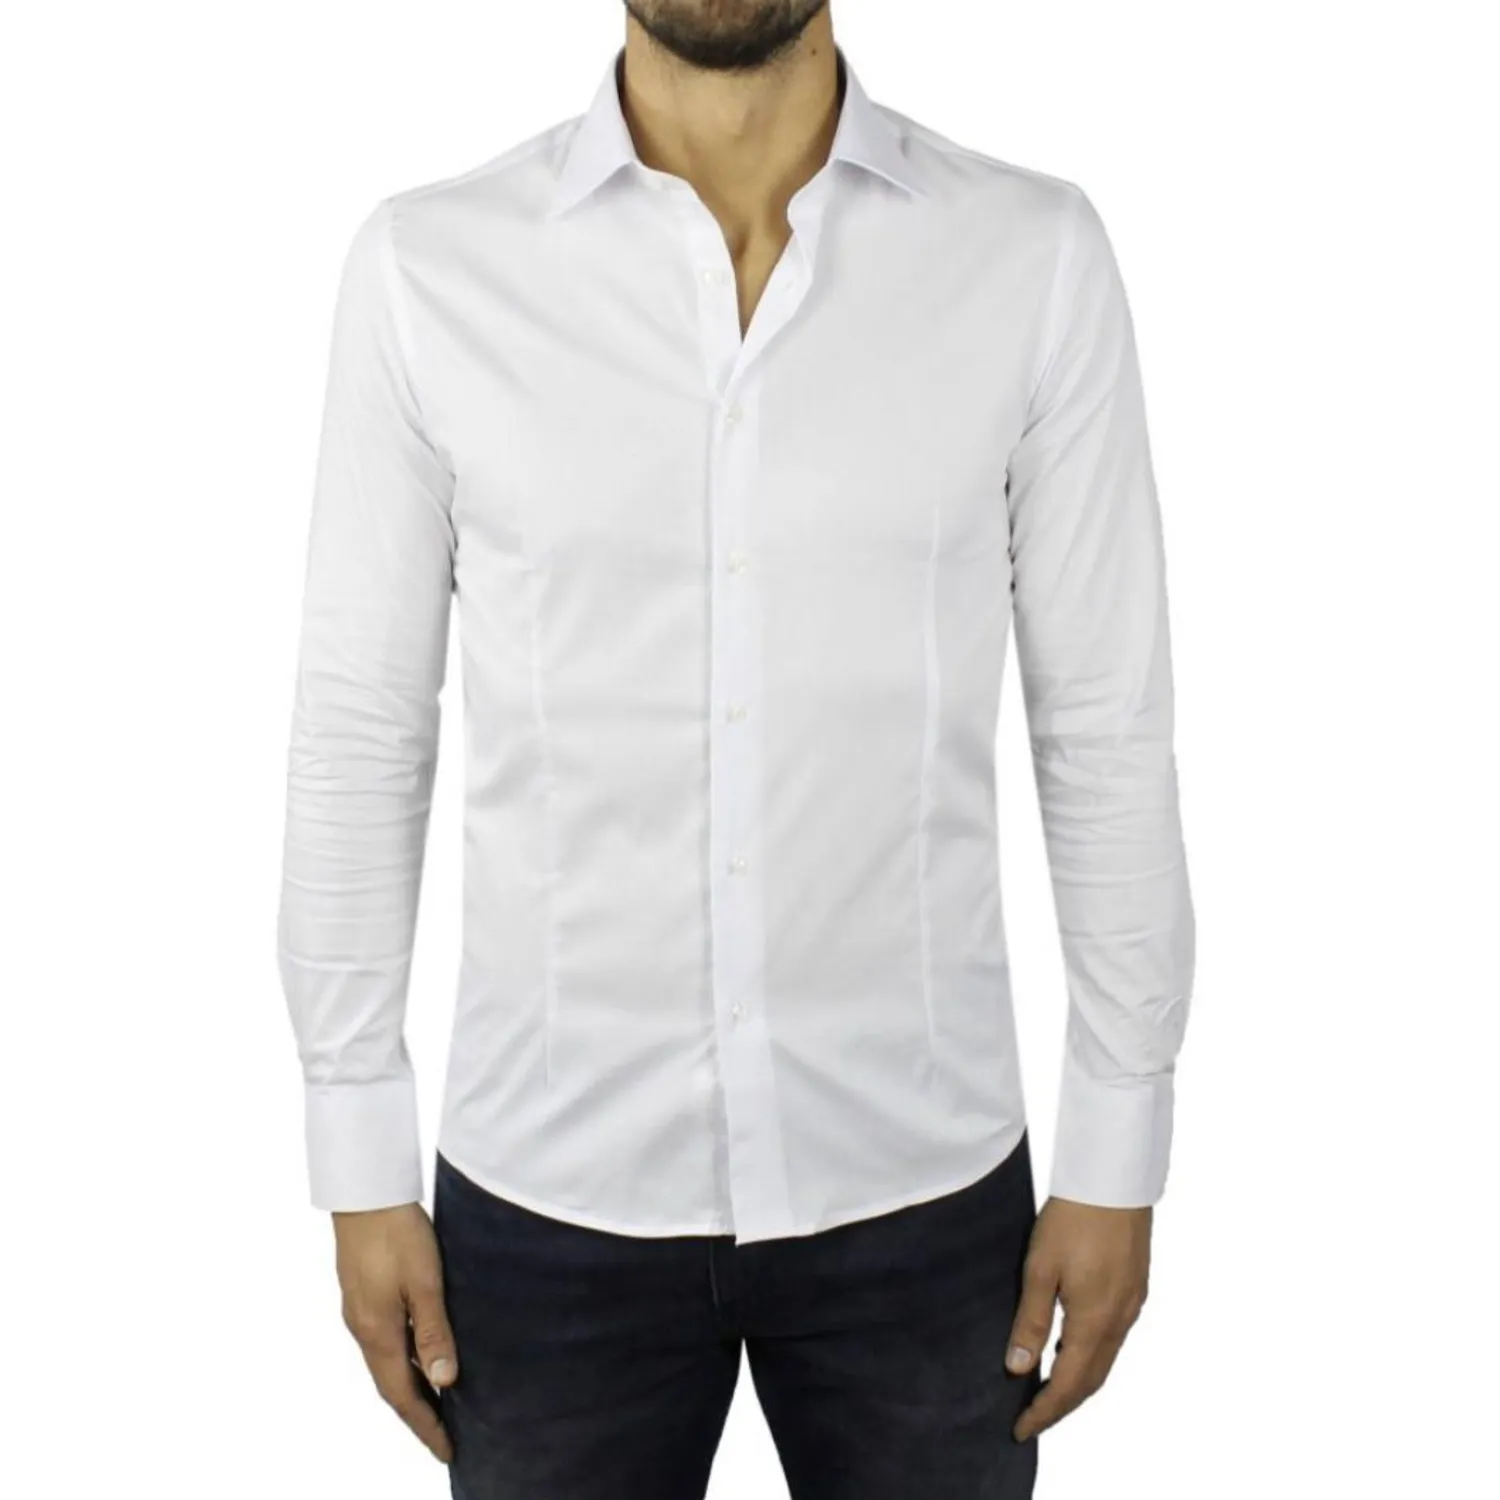 Ανδρικό μακρυμάνικο πουκάμισο μονόχρωμο λευκό